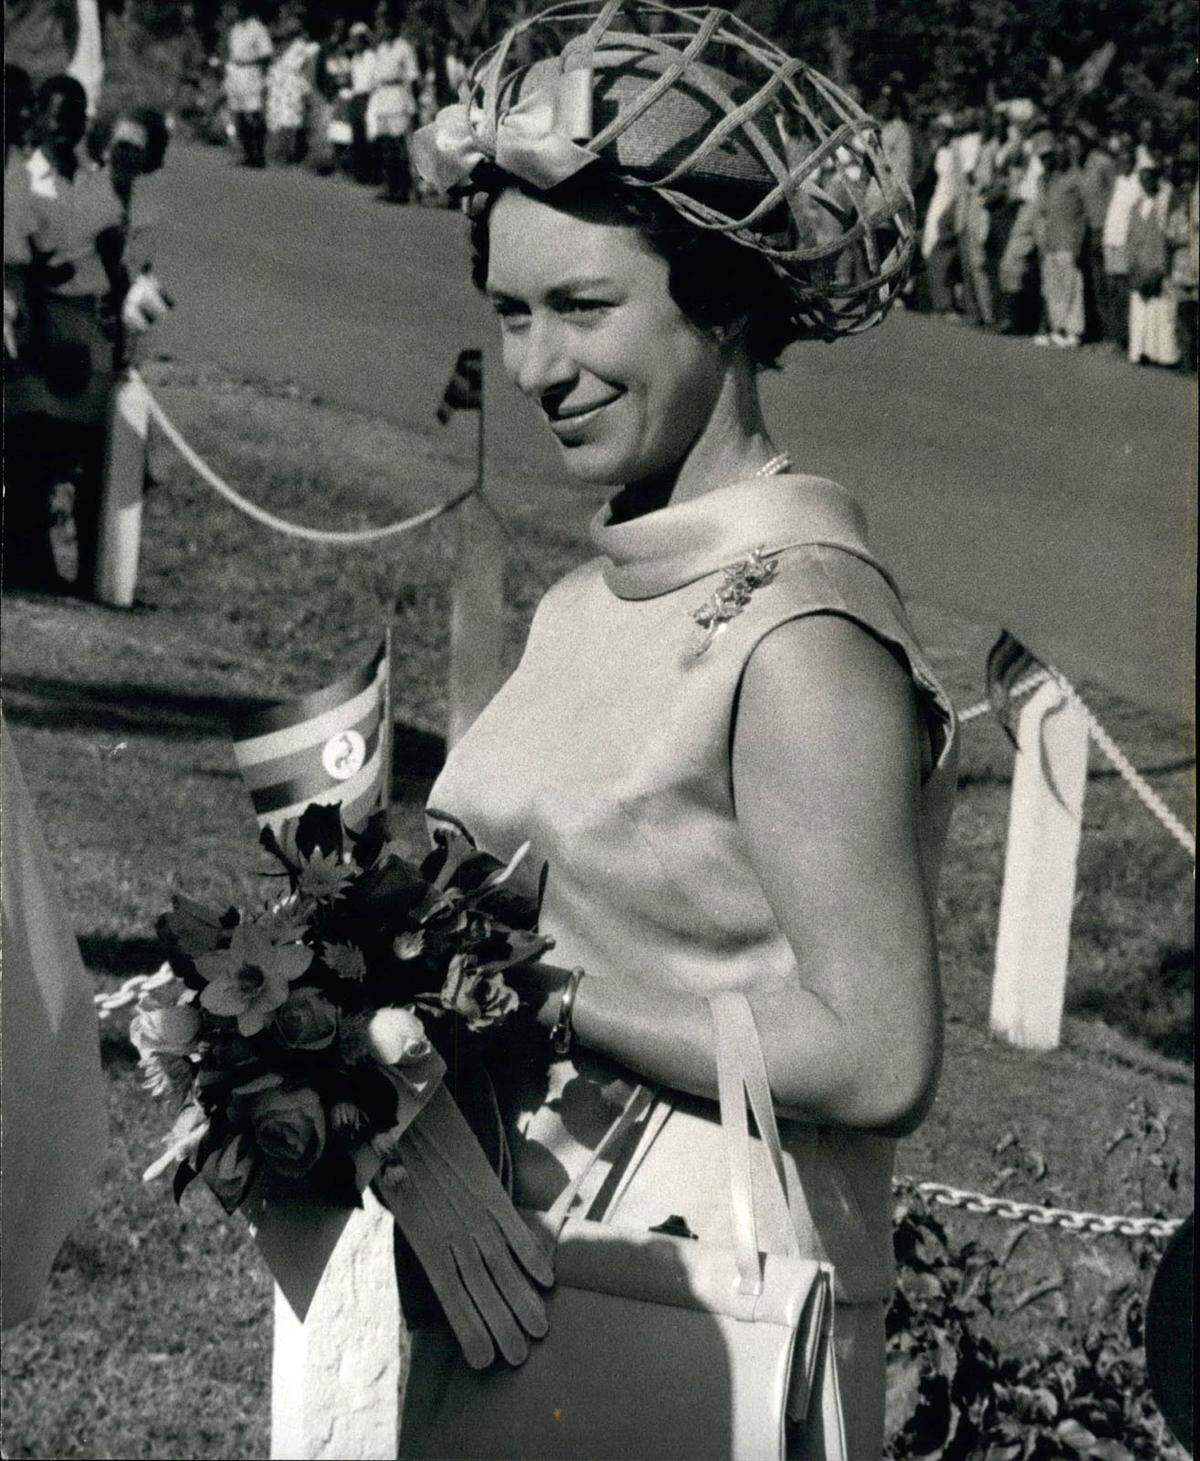 Für ihren auffälligen Kopfschmuck war die Prinzessin bekannt. Hier etwa im März 1965 bei einem Besuch in Uganda.